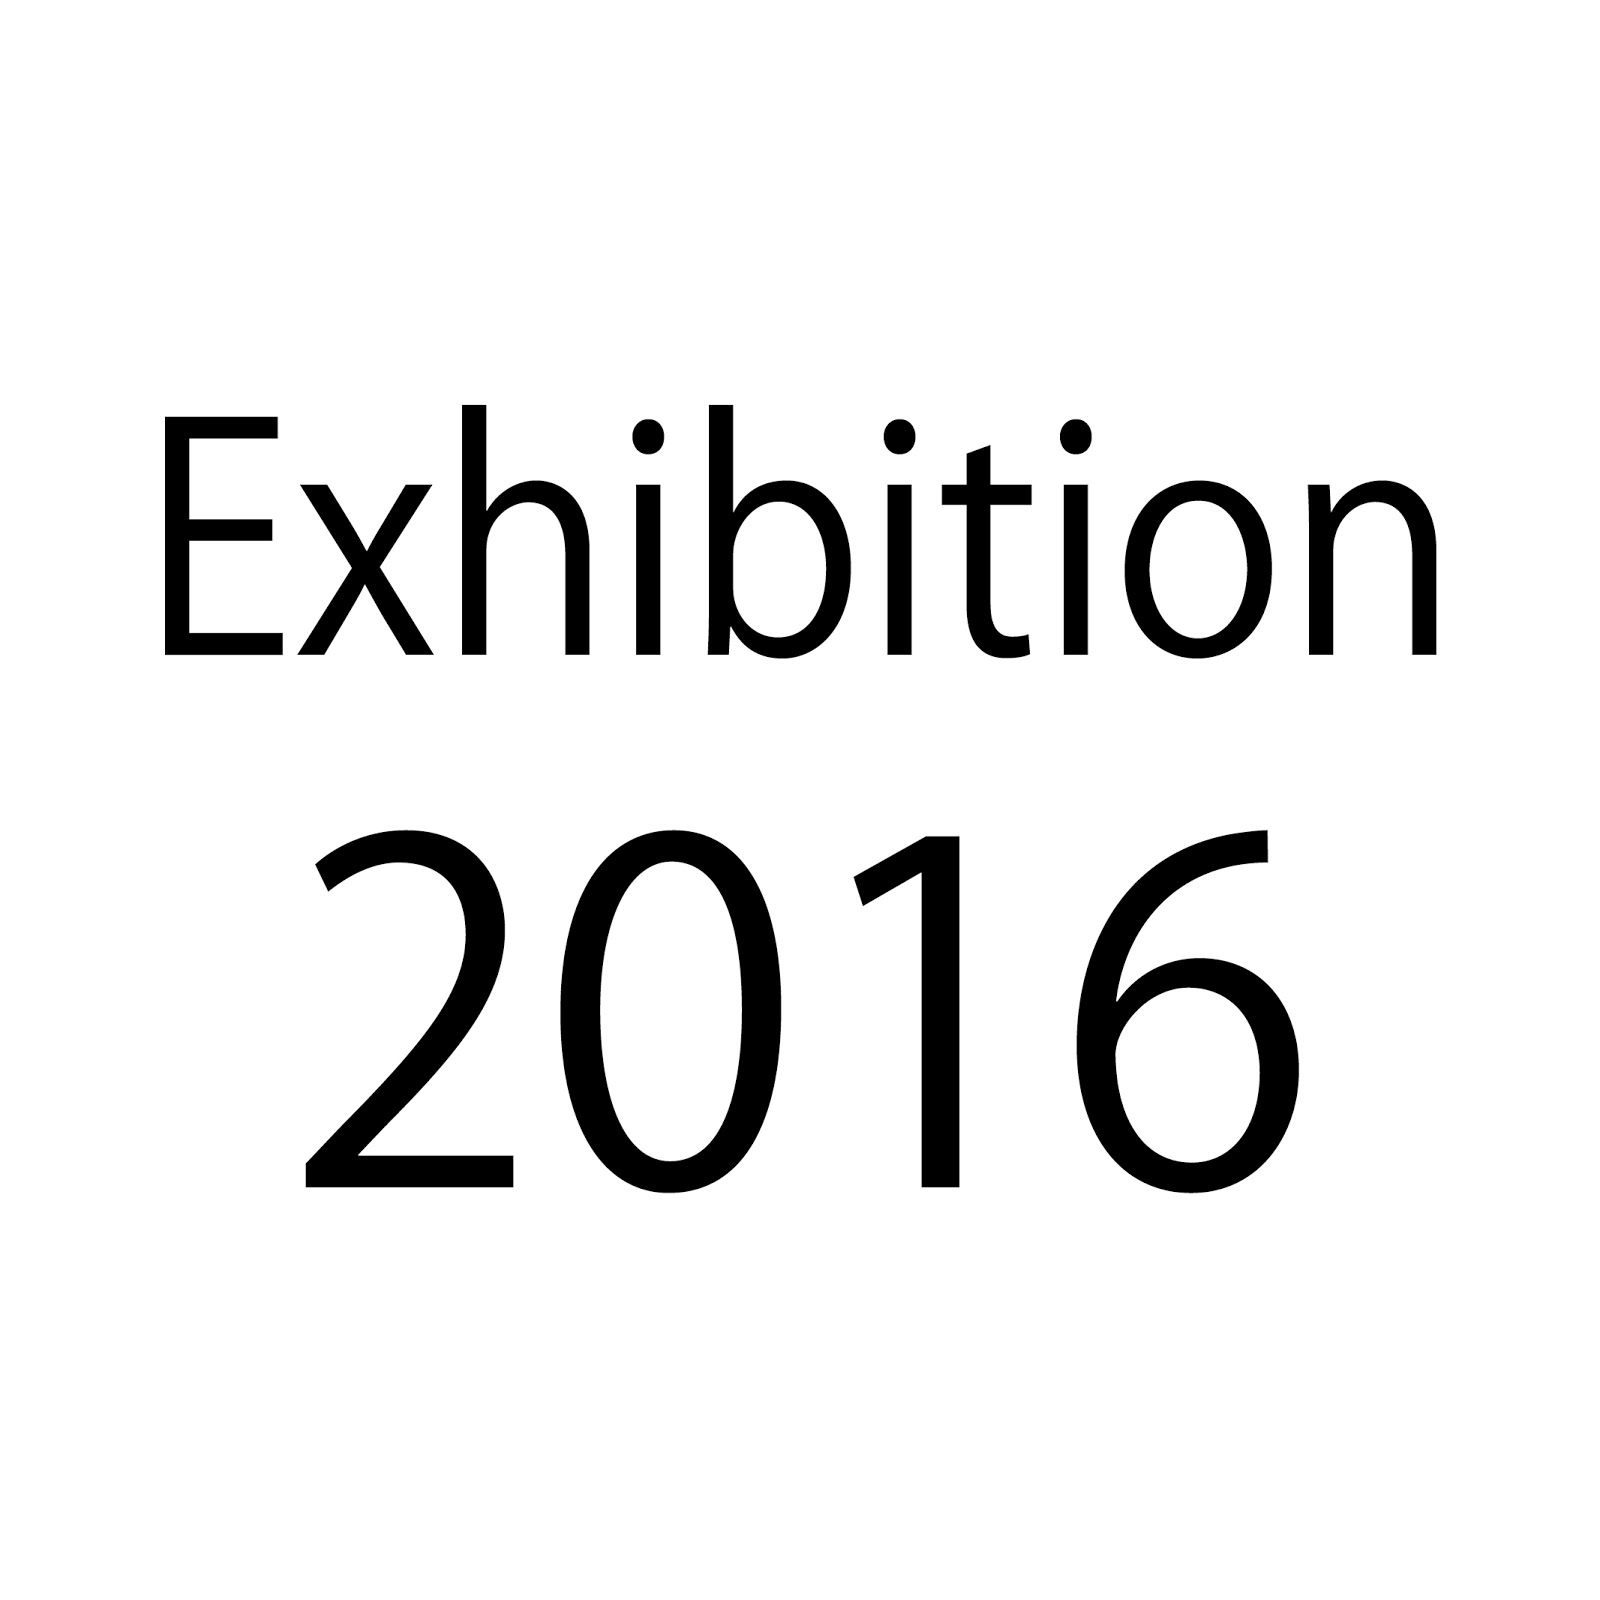 Exhibition 2016